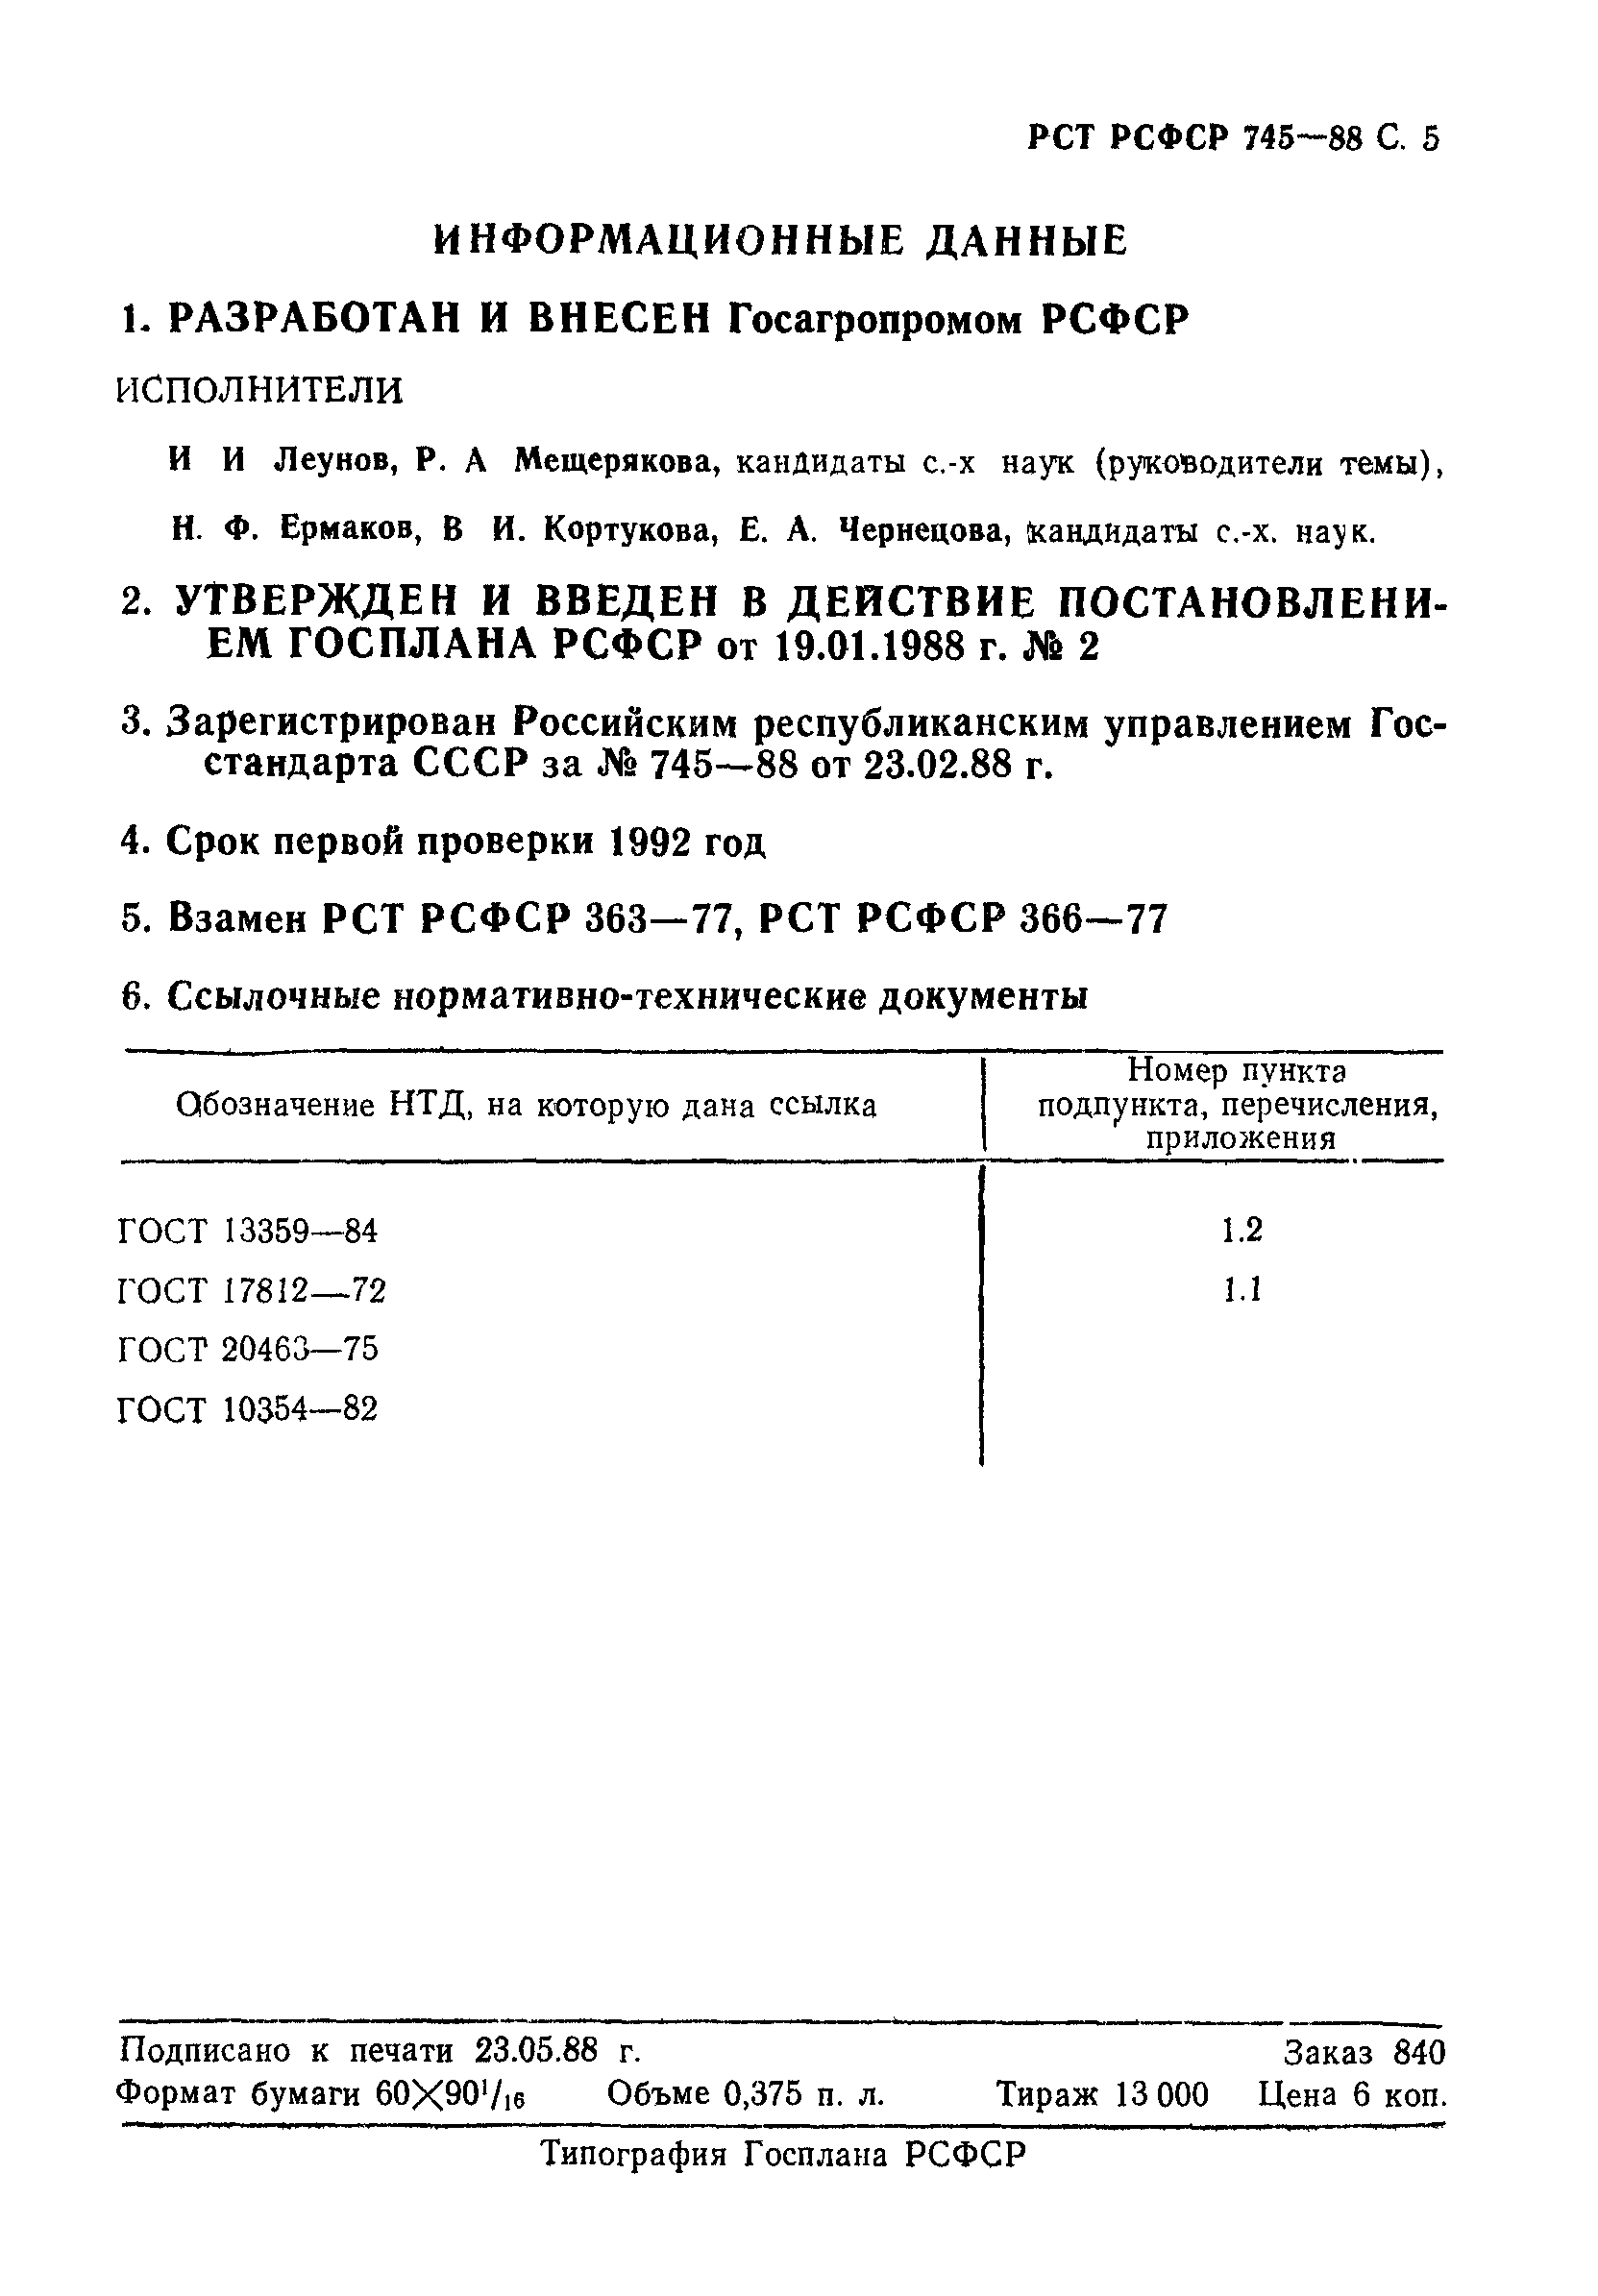 РСТ РСФСР 745-88